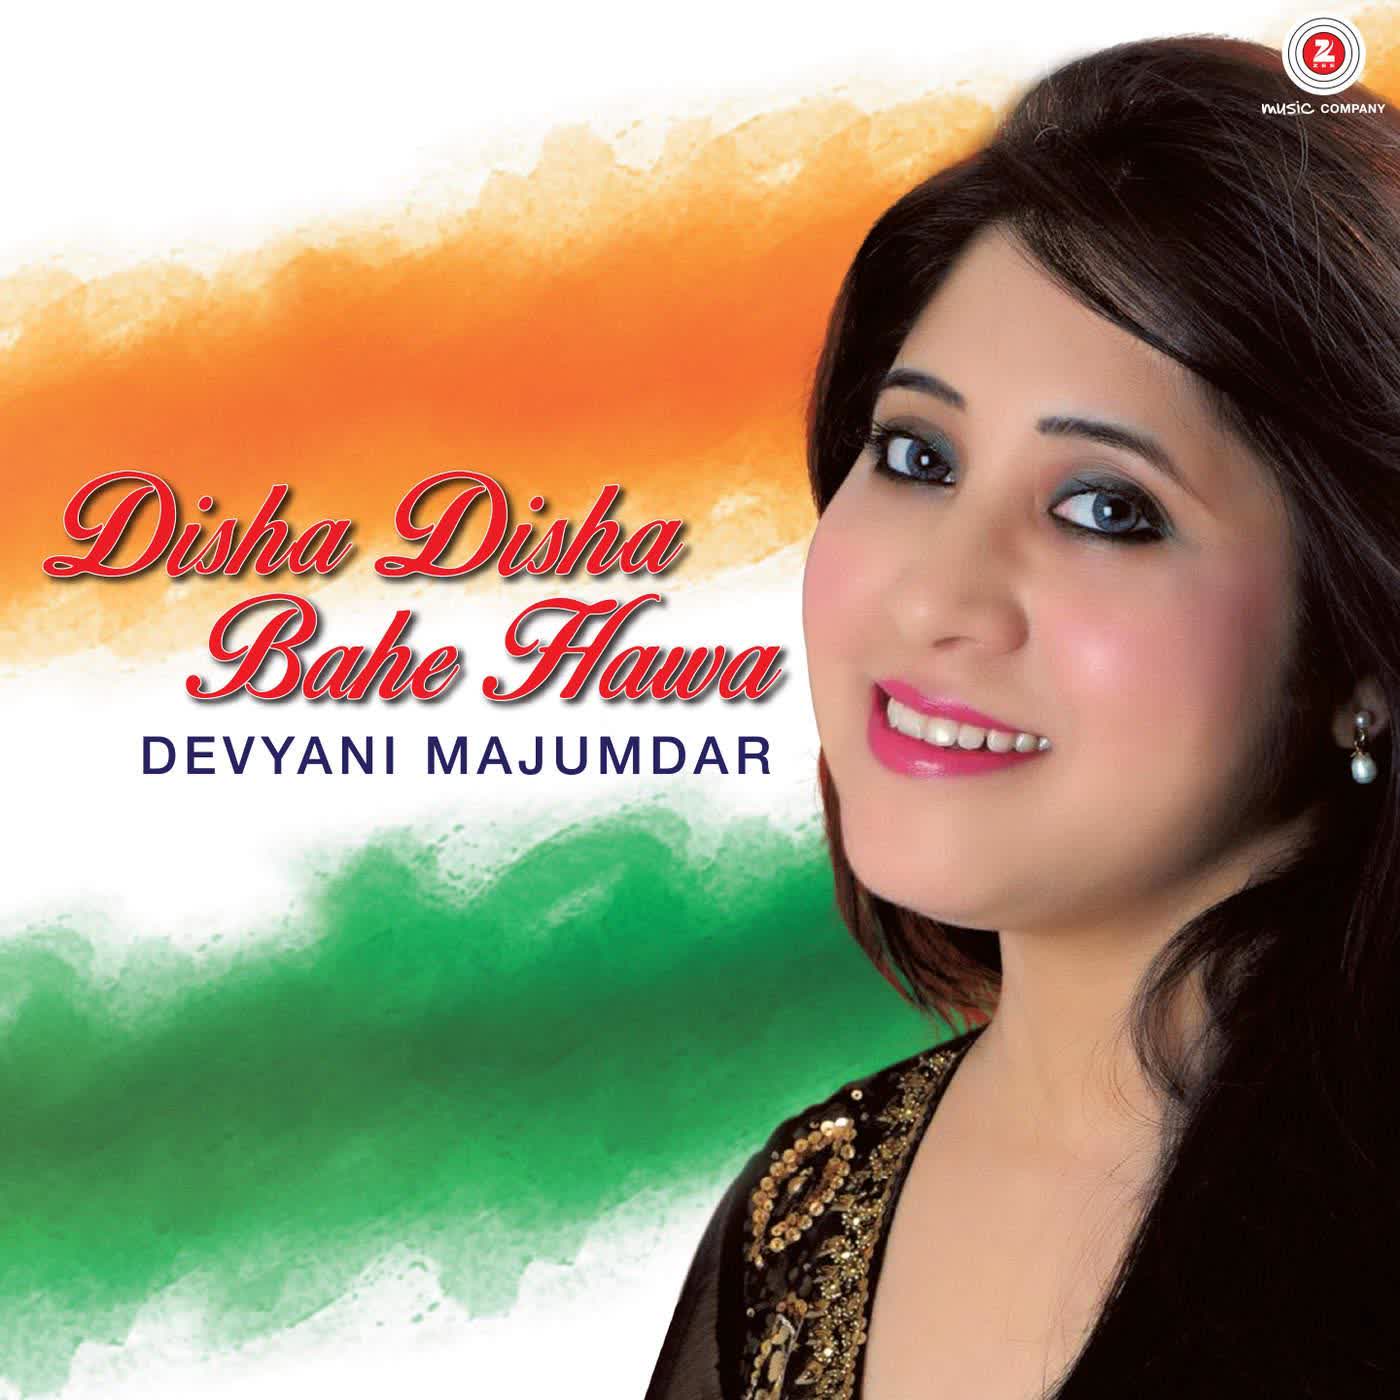 Disha Disha Bahe Hawa Devyani Majumdar  Mp3 song download